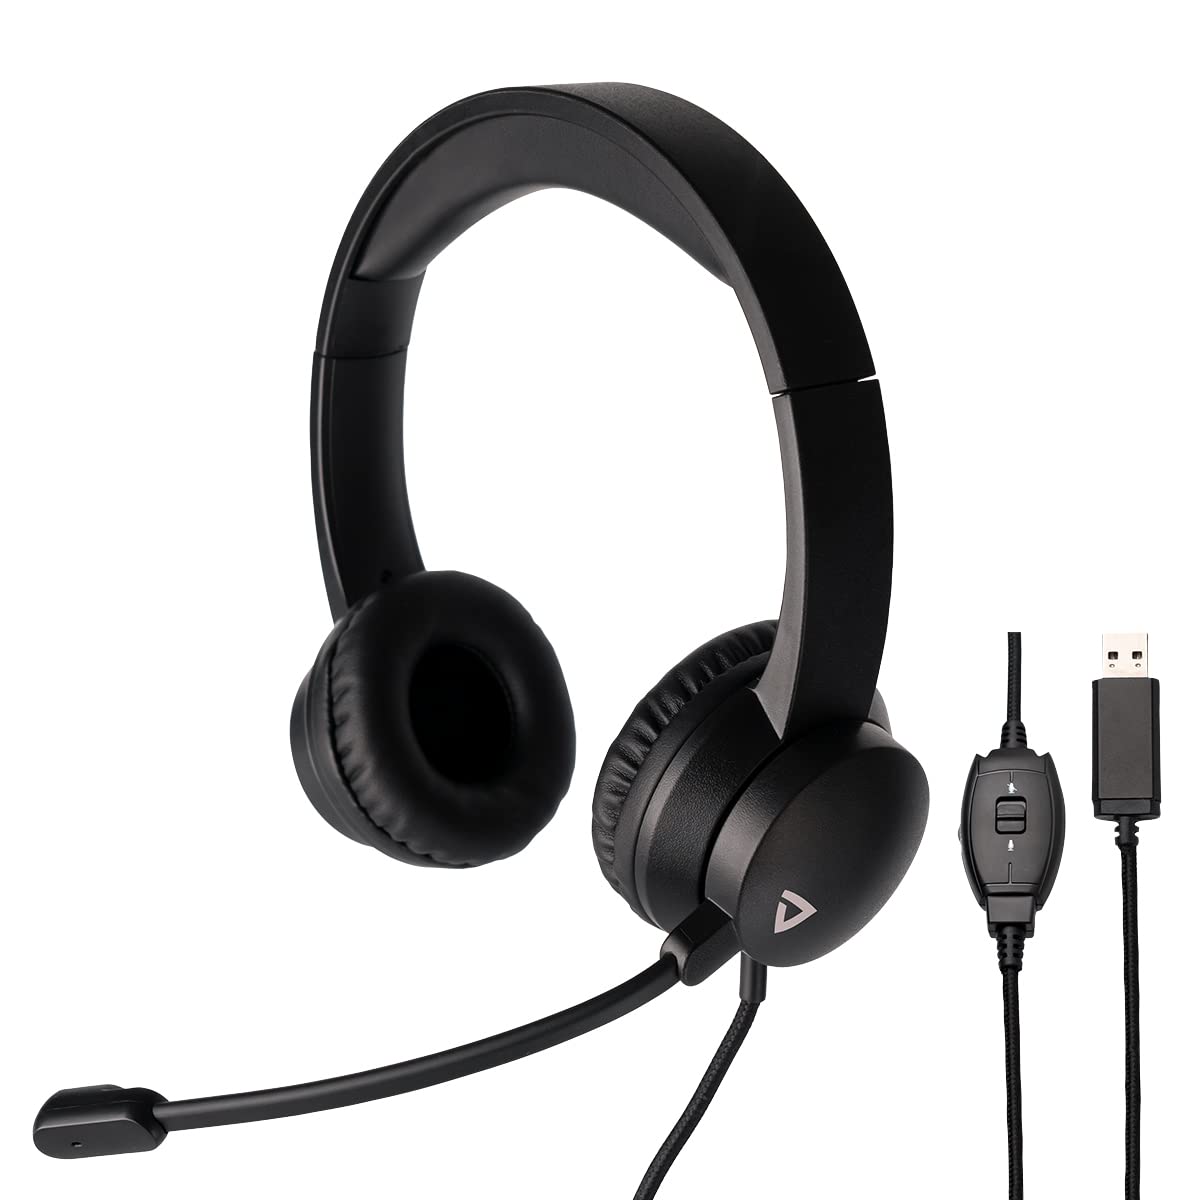 Thronmax THX-20 USB-Headset mit Bügelmikrofon (THX20) mit gepolsterten Kopfhörern und integrierter Fernbedienung für Bequeme HQ Kommunikation bei Onlinekursen / Videospielen / Chat / etc.